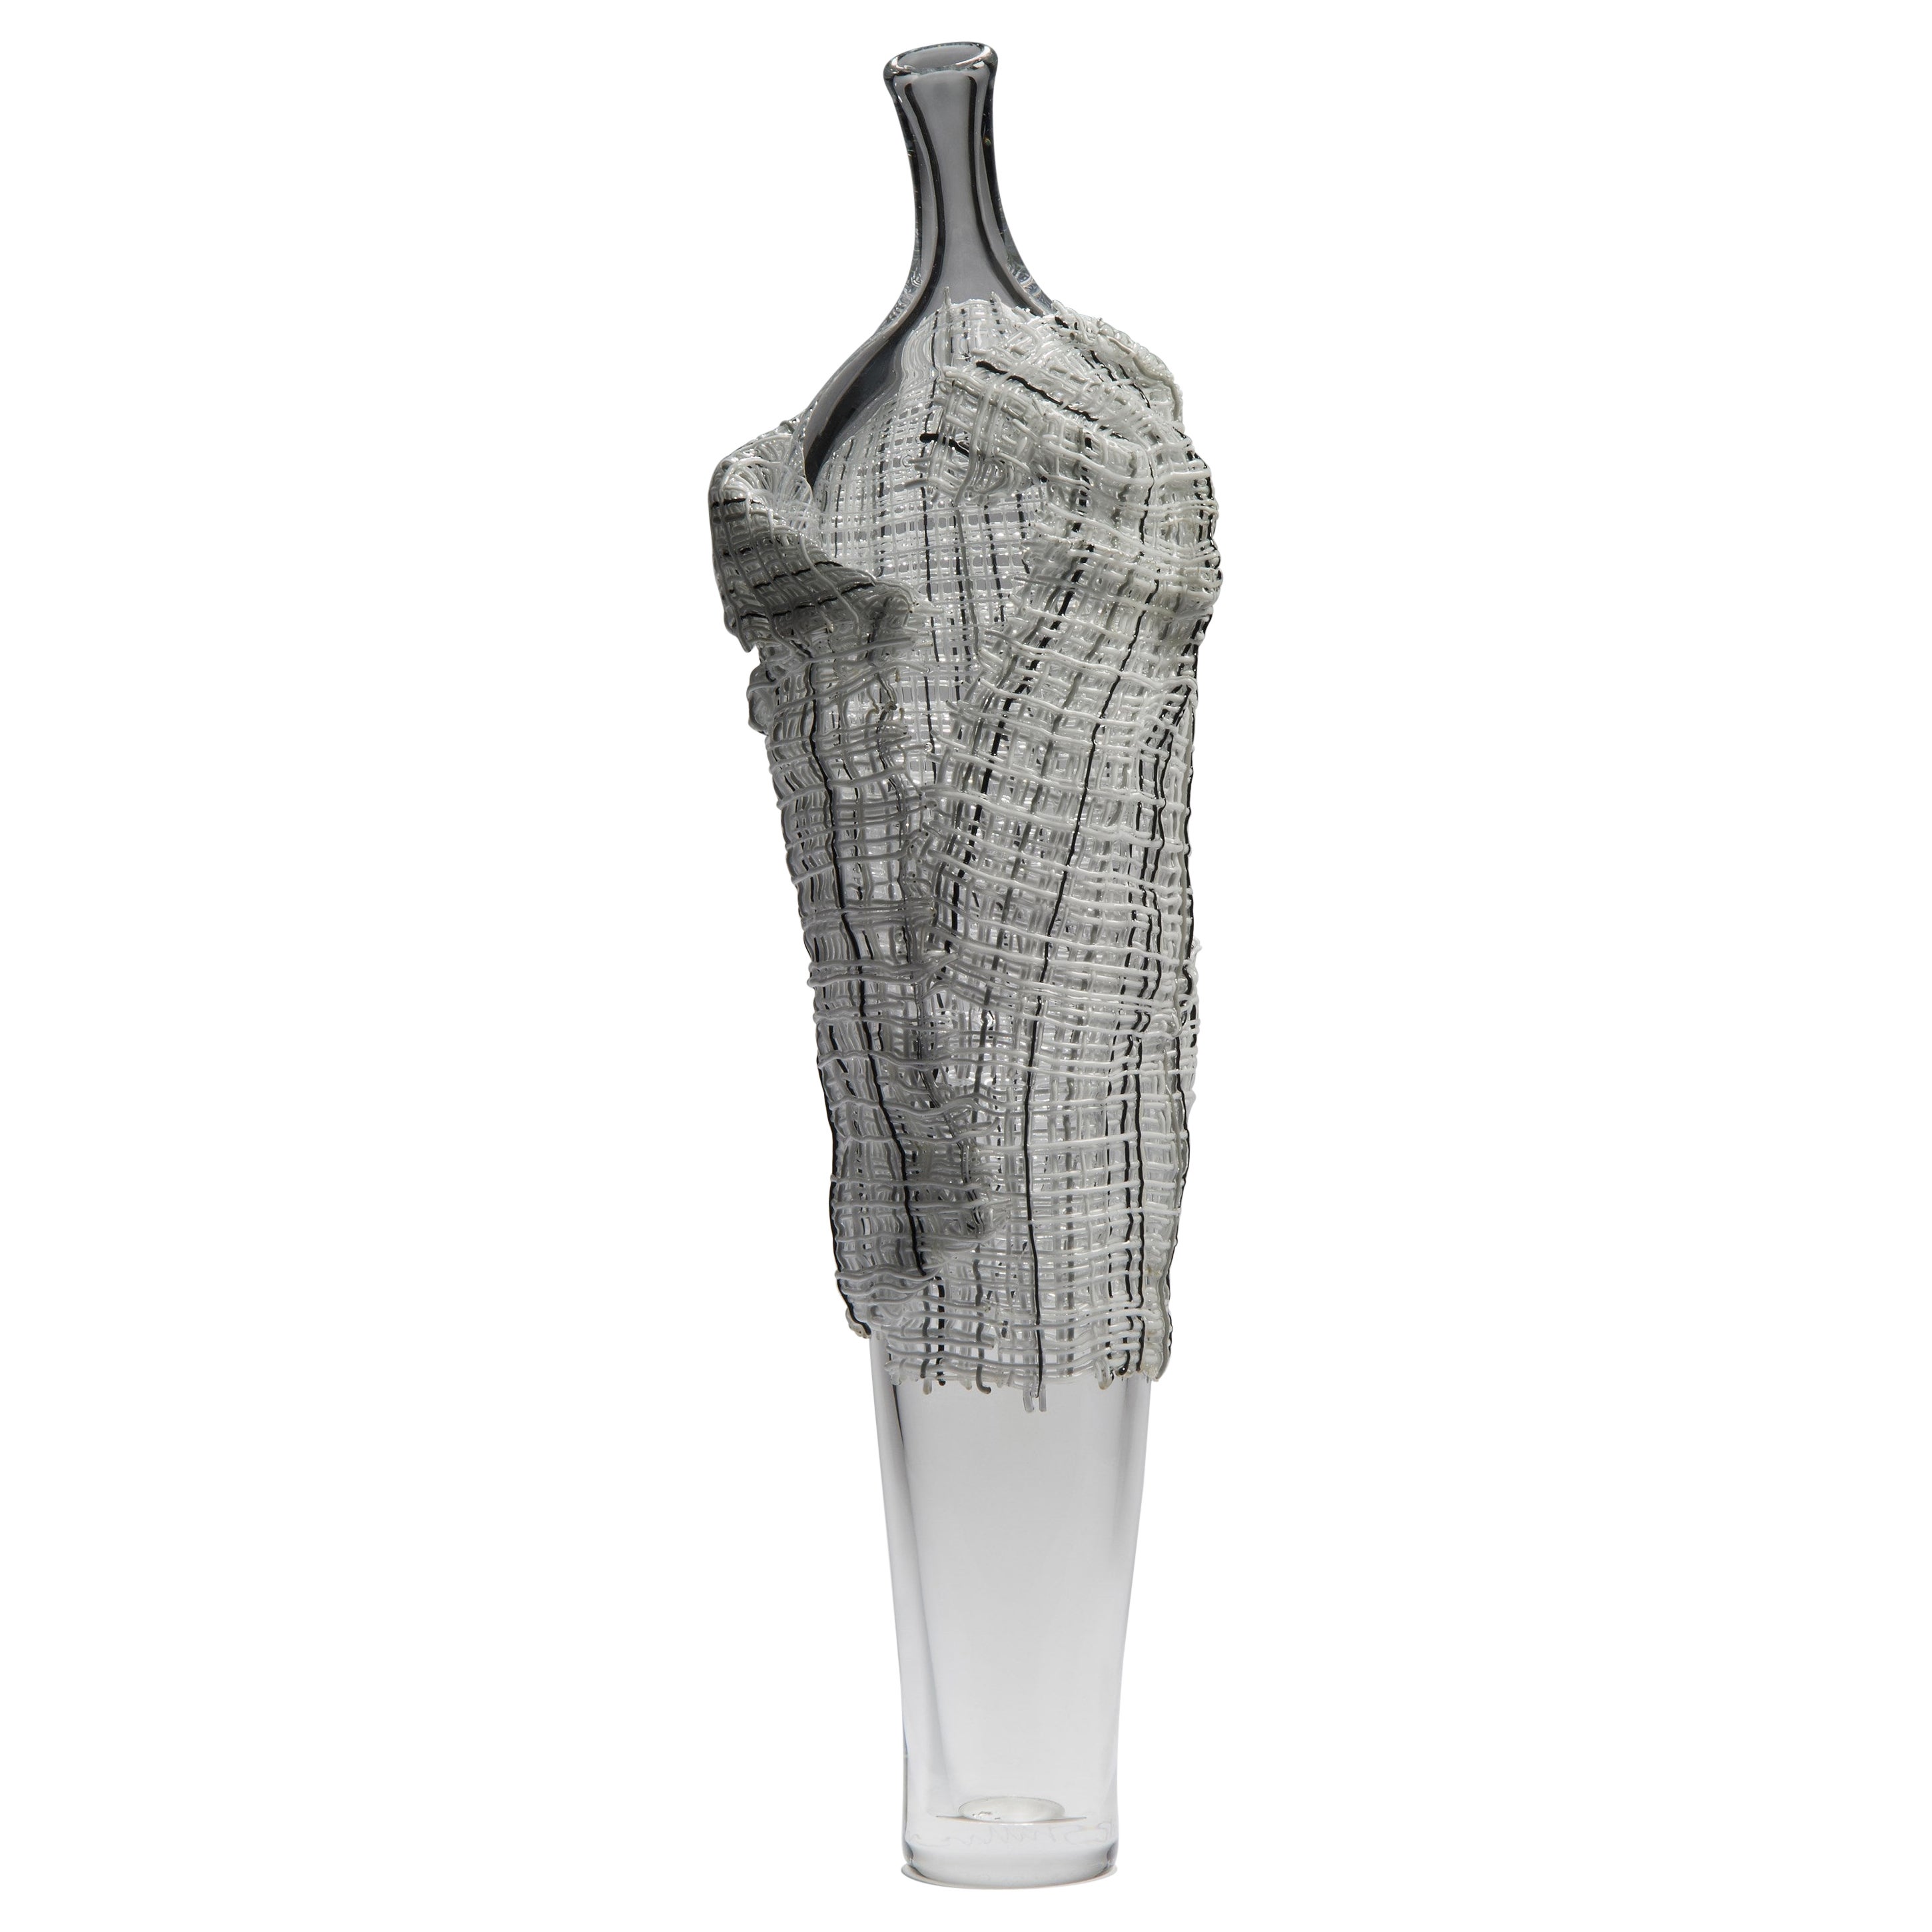  Hera, eine figurative Glasskulptur aus klarem, grauem und schwarzem Glas von Cathryn Shilling